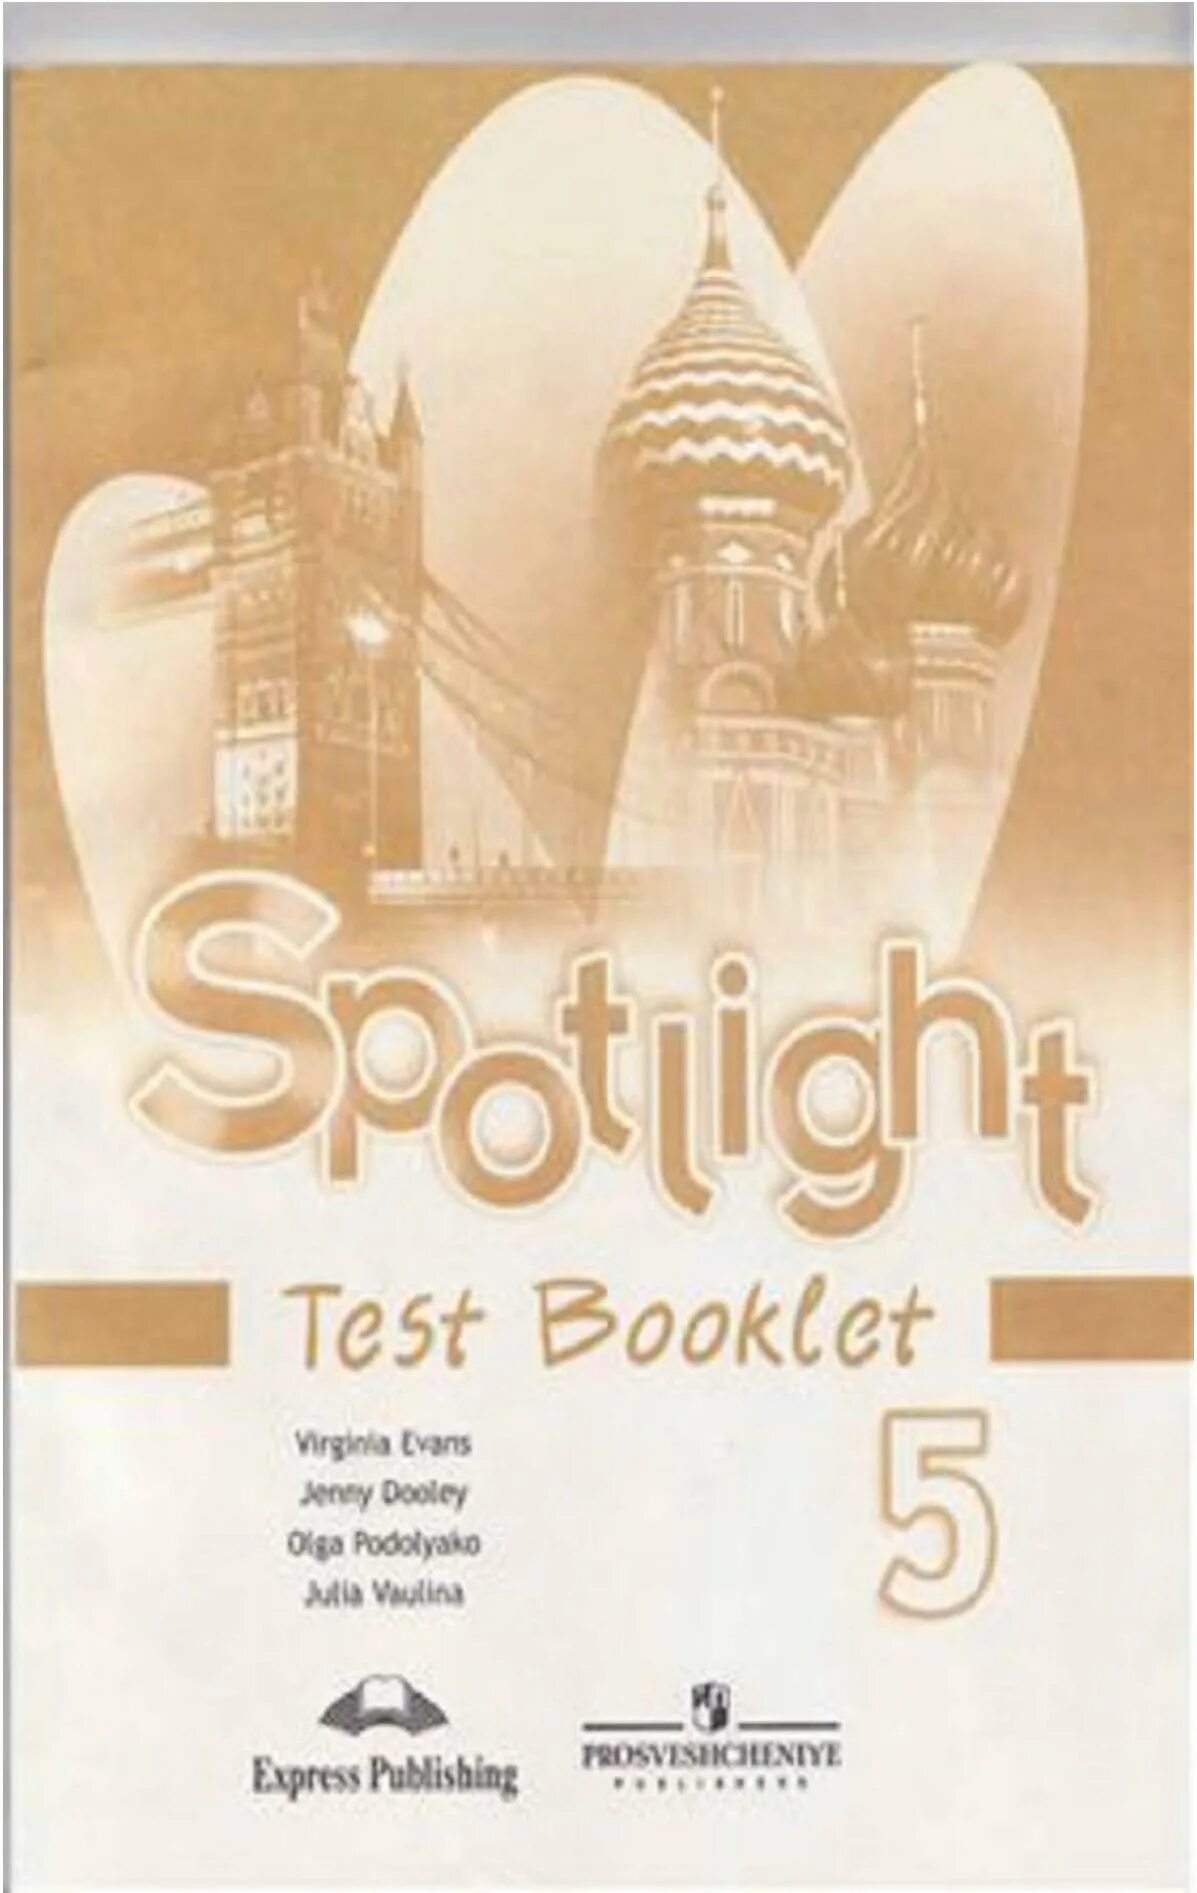 Spotlight 5 booklet ответы. Test booklet 5 класс Spotlight. Английский в фокусе 5 класс контрольные задания. Spotlight 5 тест буклет. Английский в фокусе 5 класс тест буклет.